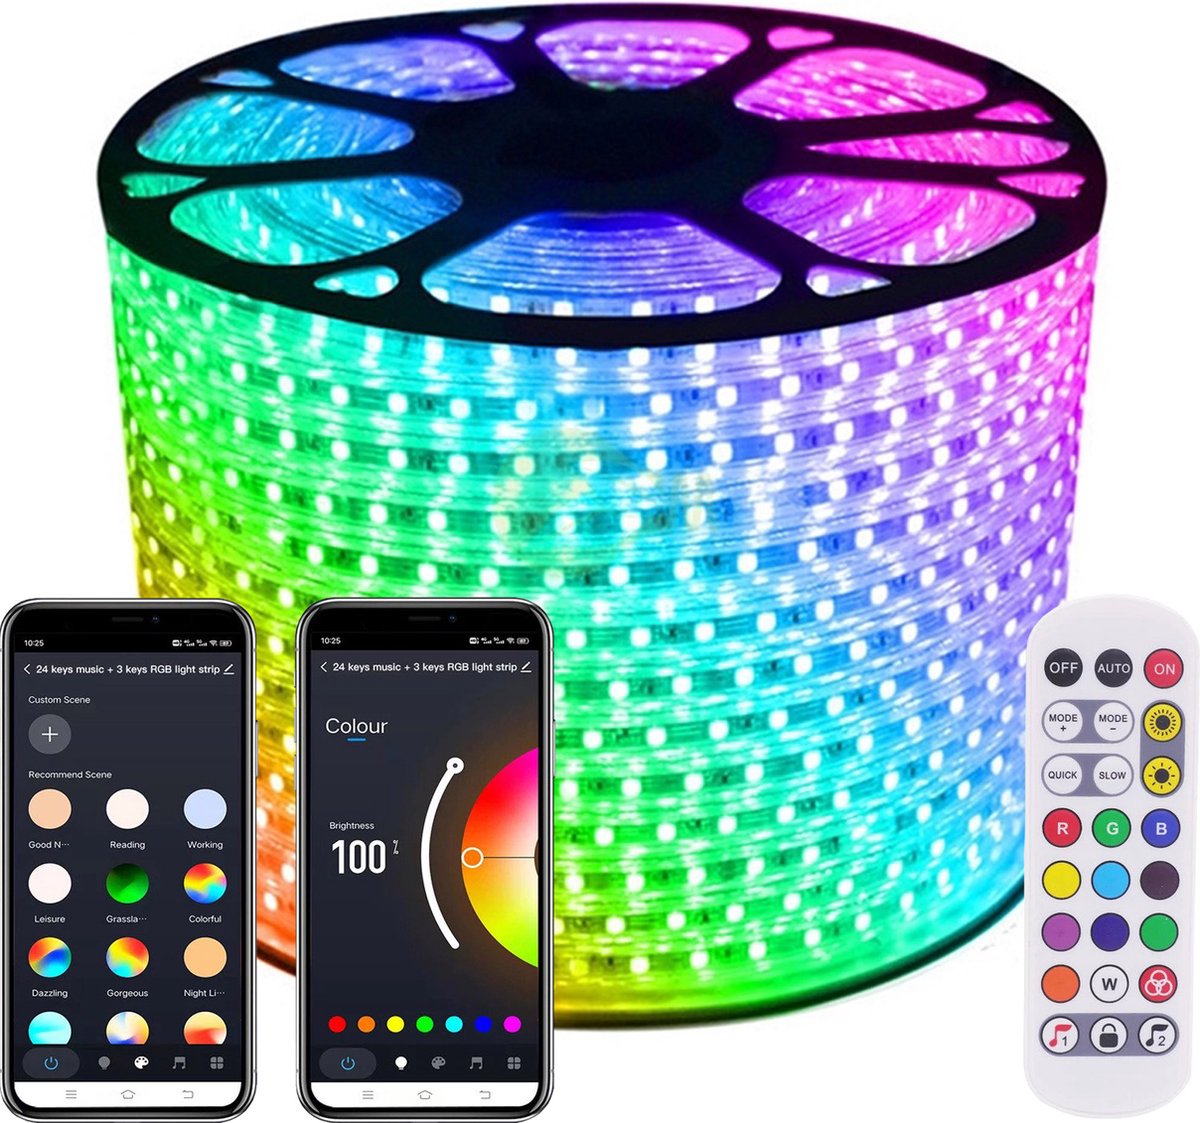 LED Strip RGB - 10 Meter aan één stuk - 16Miljoen kleuren - Met Wi-Fi App + IR 24 knops afstandsbediening - Smarthome - Google Home/Amazon Alexa - Waterdicht - Makkelijke mobiele App voor bedienen inclusief afstandsbediening - iOS en Android